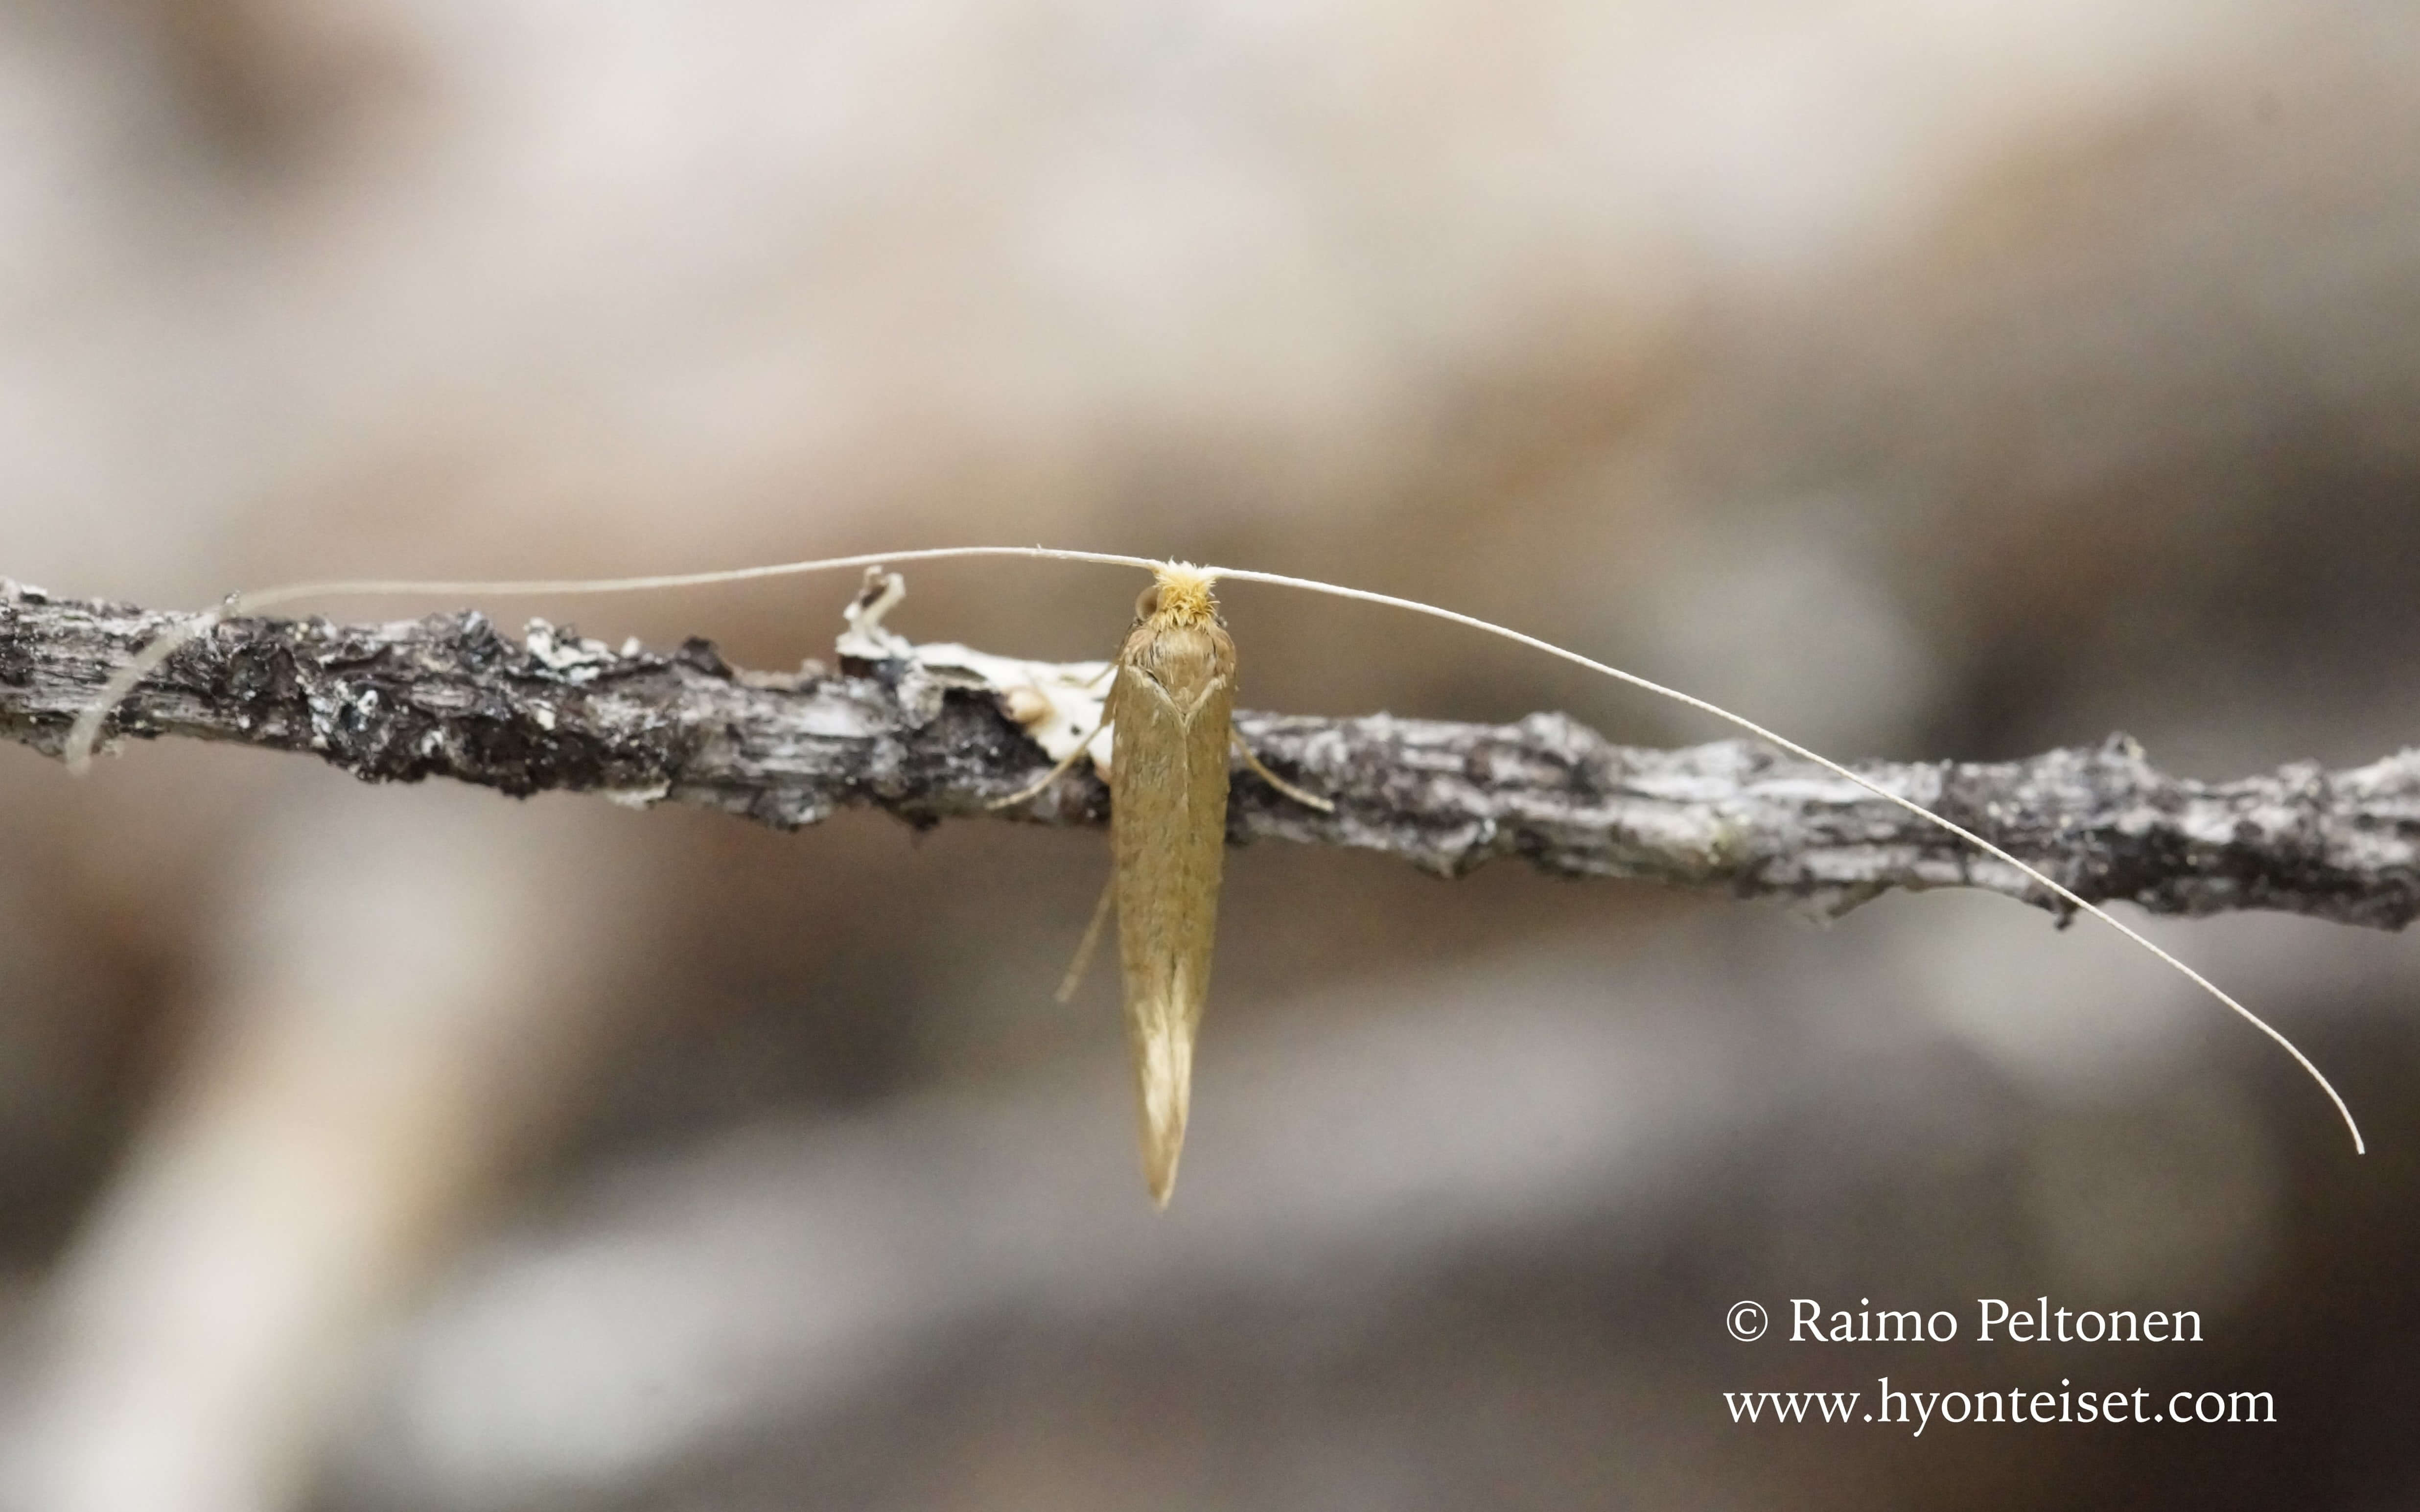 Nematopogon swammerdamellus-isosurviaiskoi (det. Ali Karhu), 18.5.2016 Jyväskylä